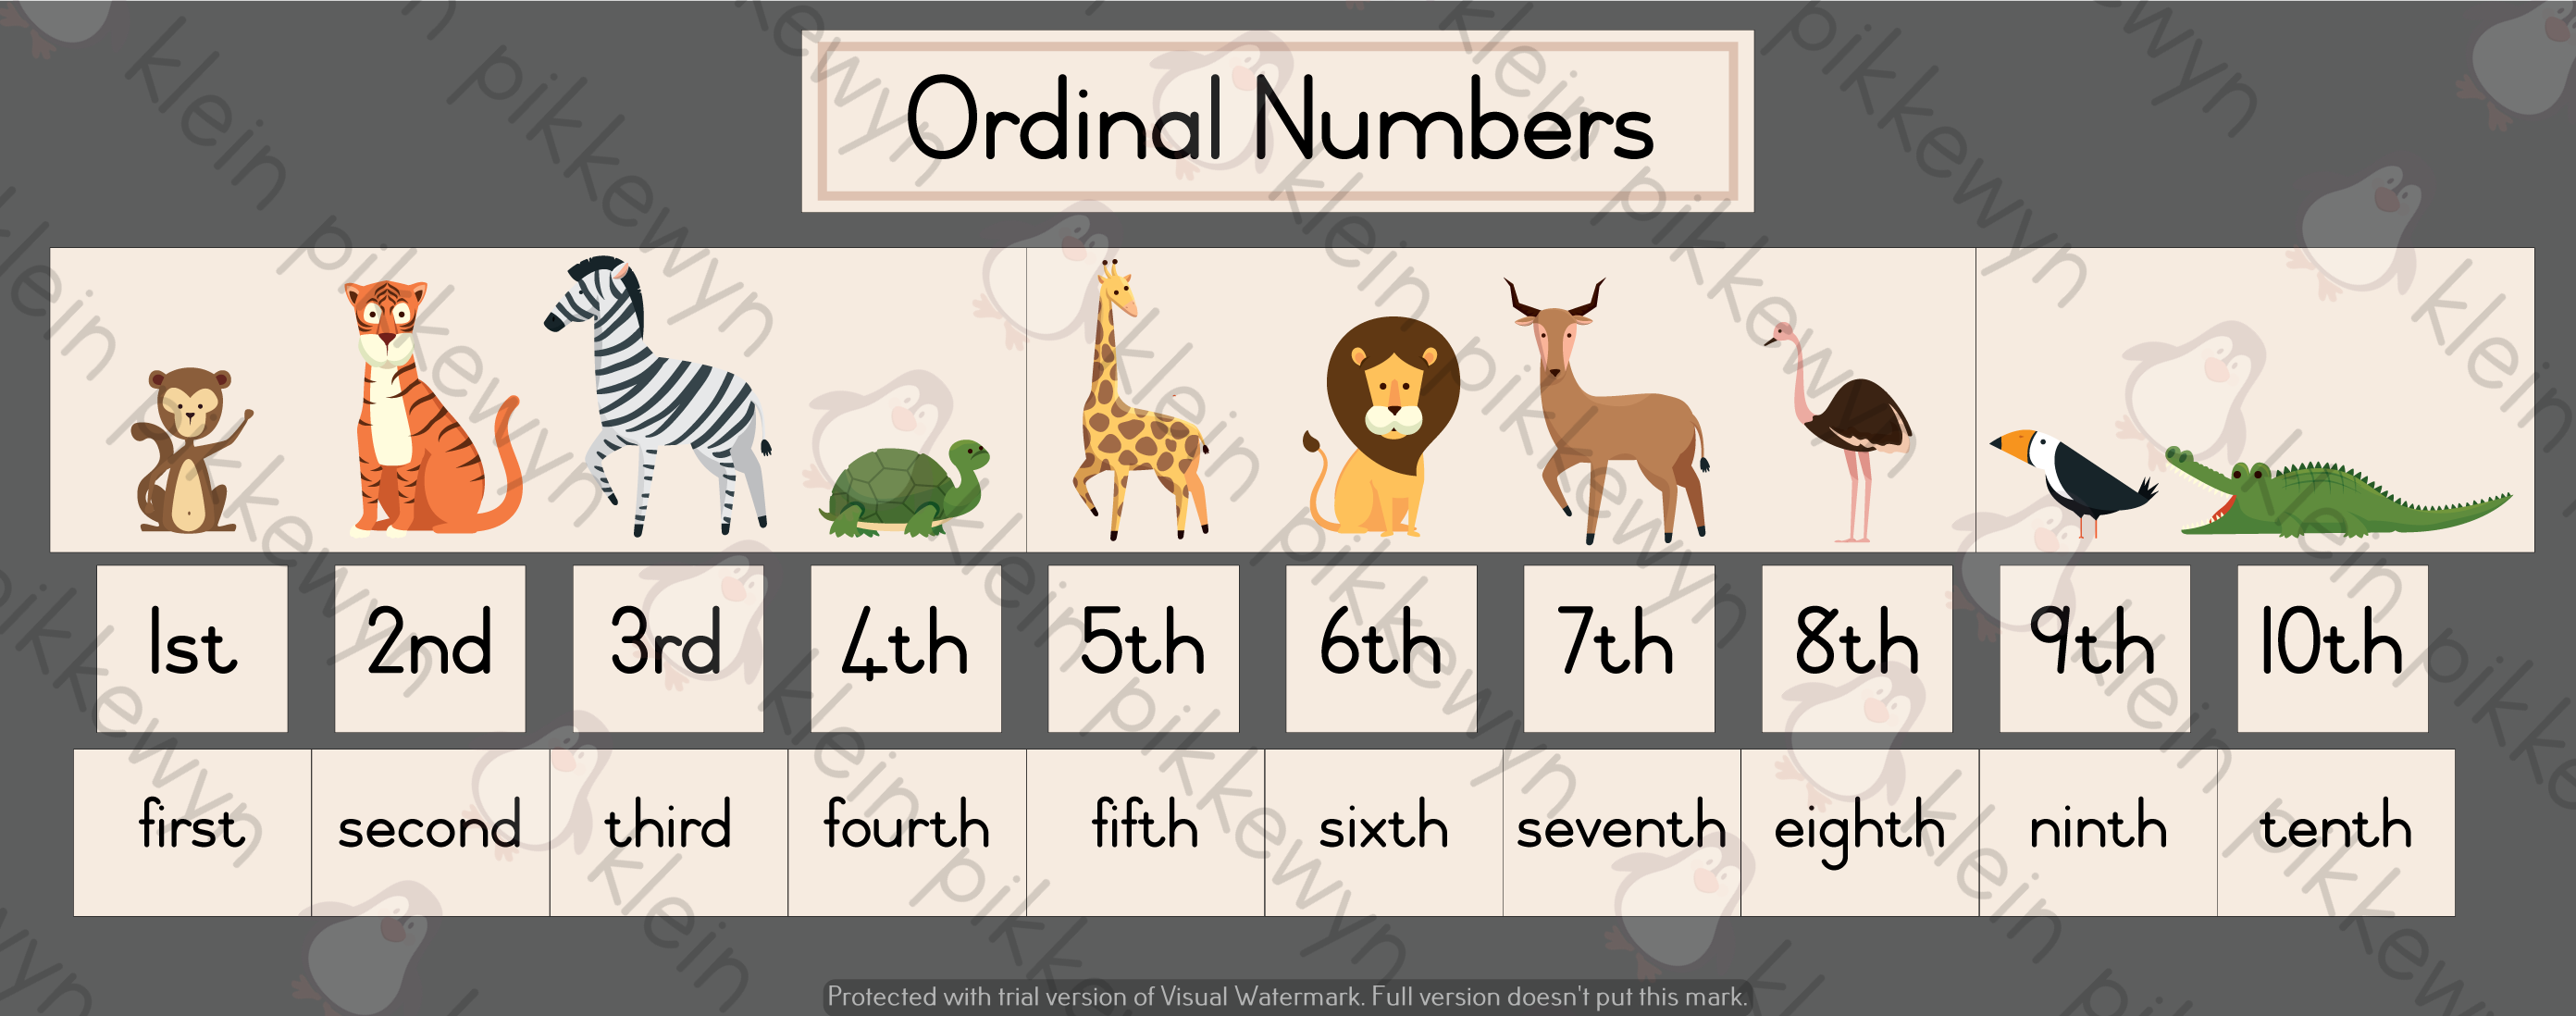 Ordinal Numbers Worksheet 1 10